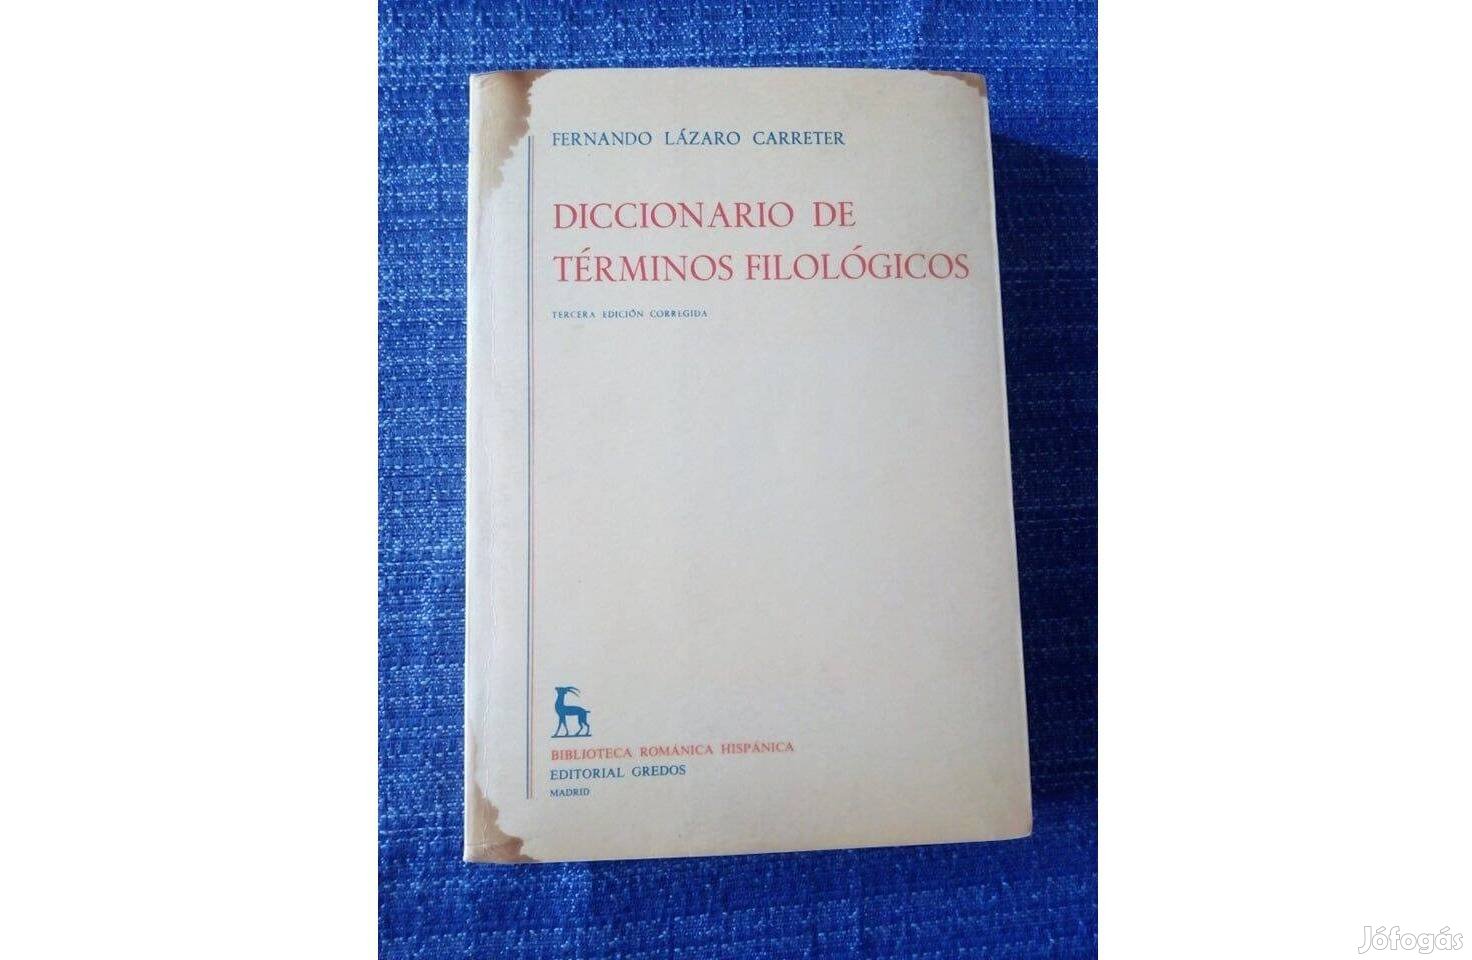 Fernando Lázaro Carreter: Diccionario de términos filológicos